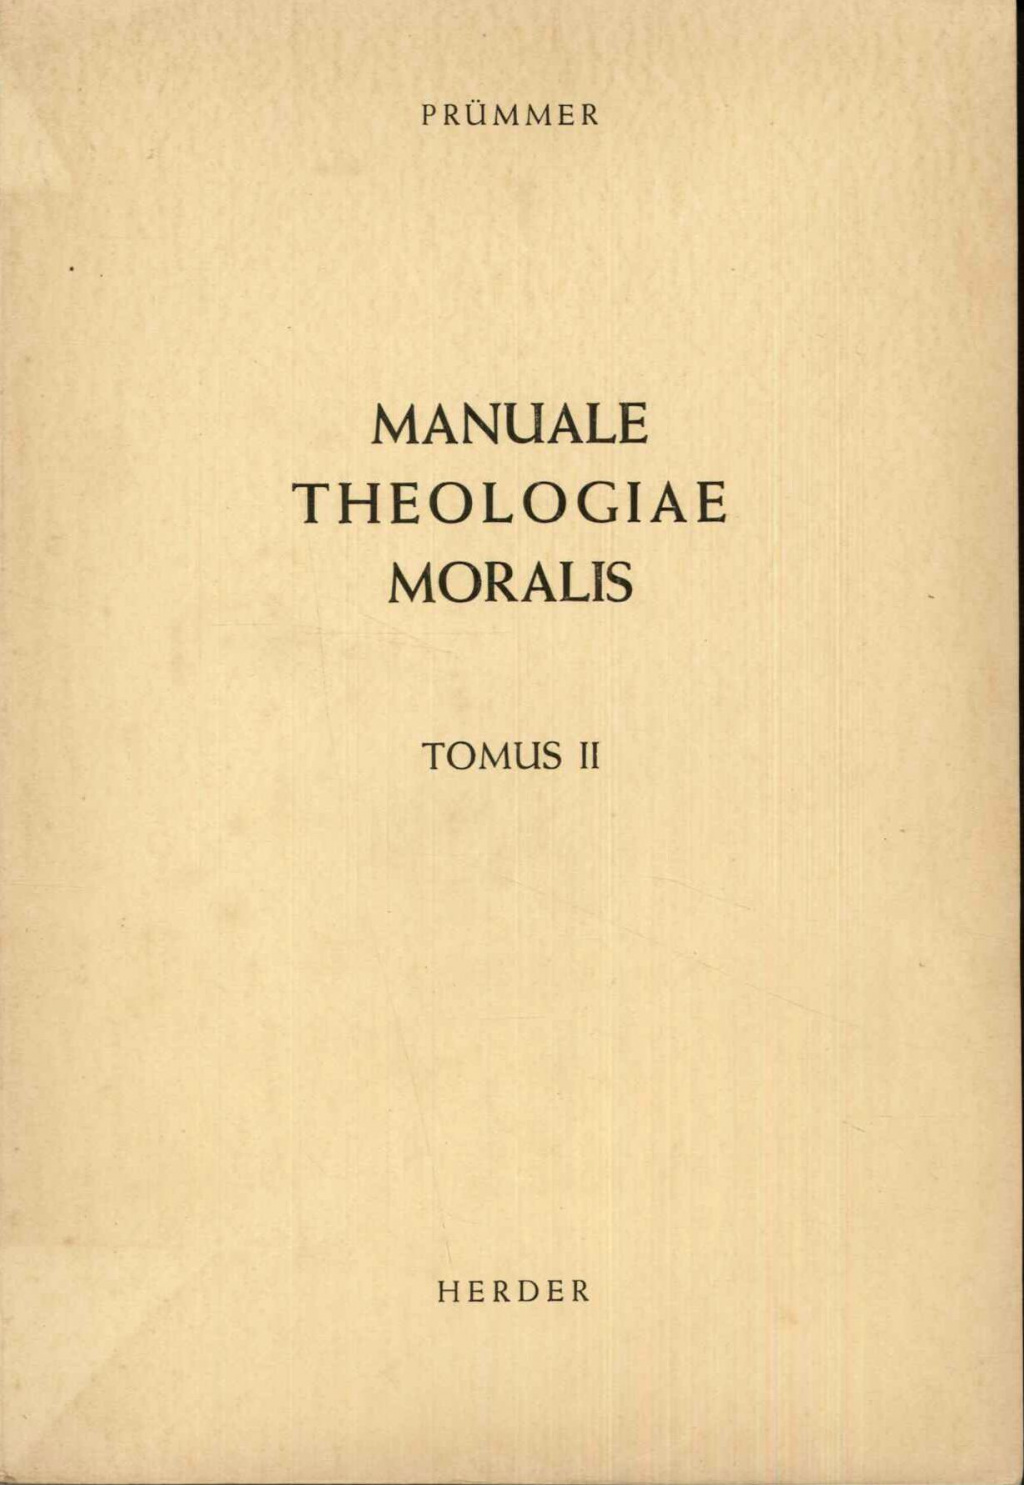 Manuale Theologiae Moralis Secundum Principia S. Thomae Aquinatis. In usum scholarum edidit. Tomus II. Editio quarta decima, recognita a Joachim Overbeck O.P.